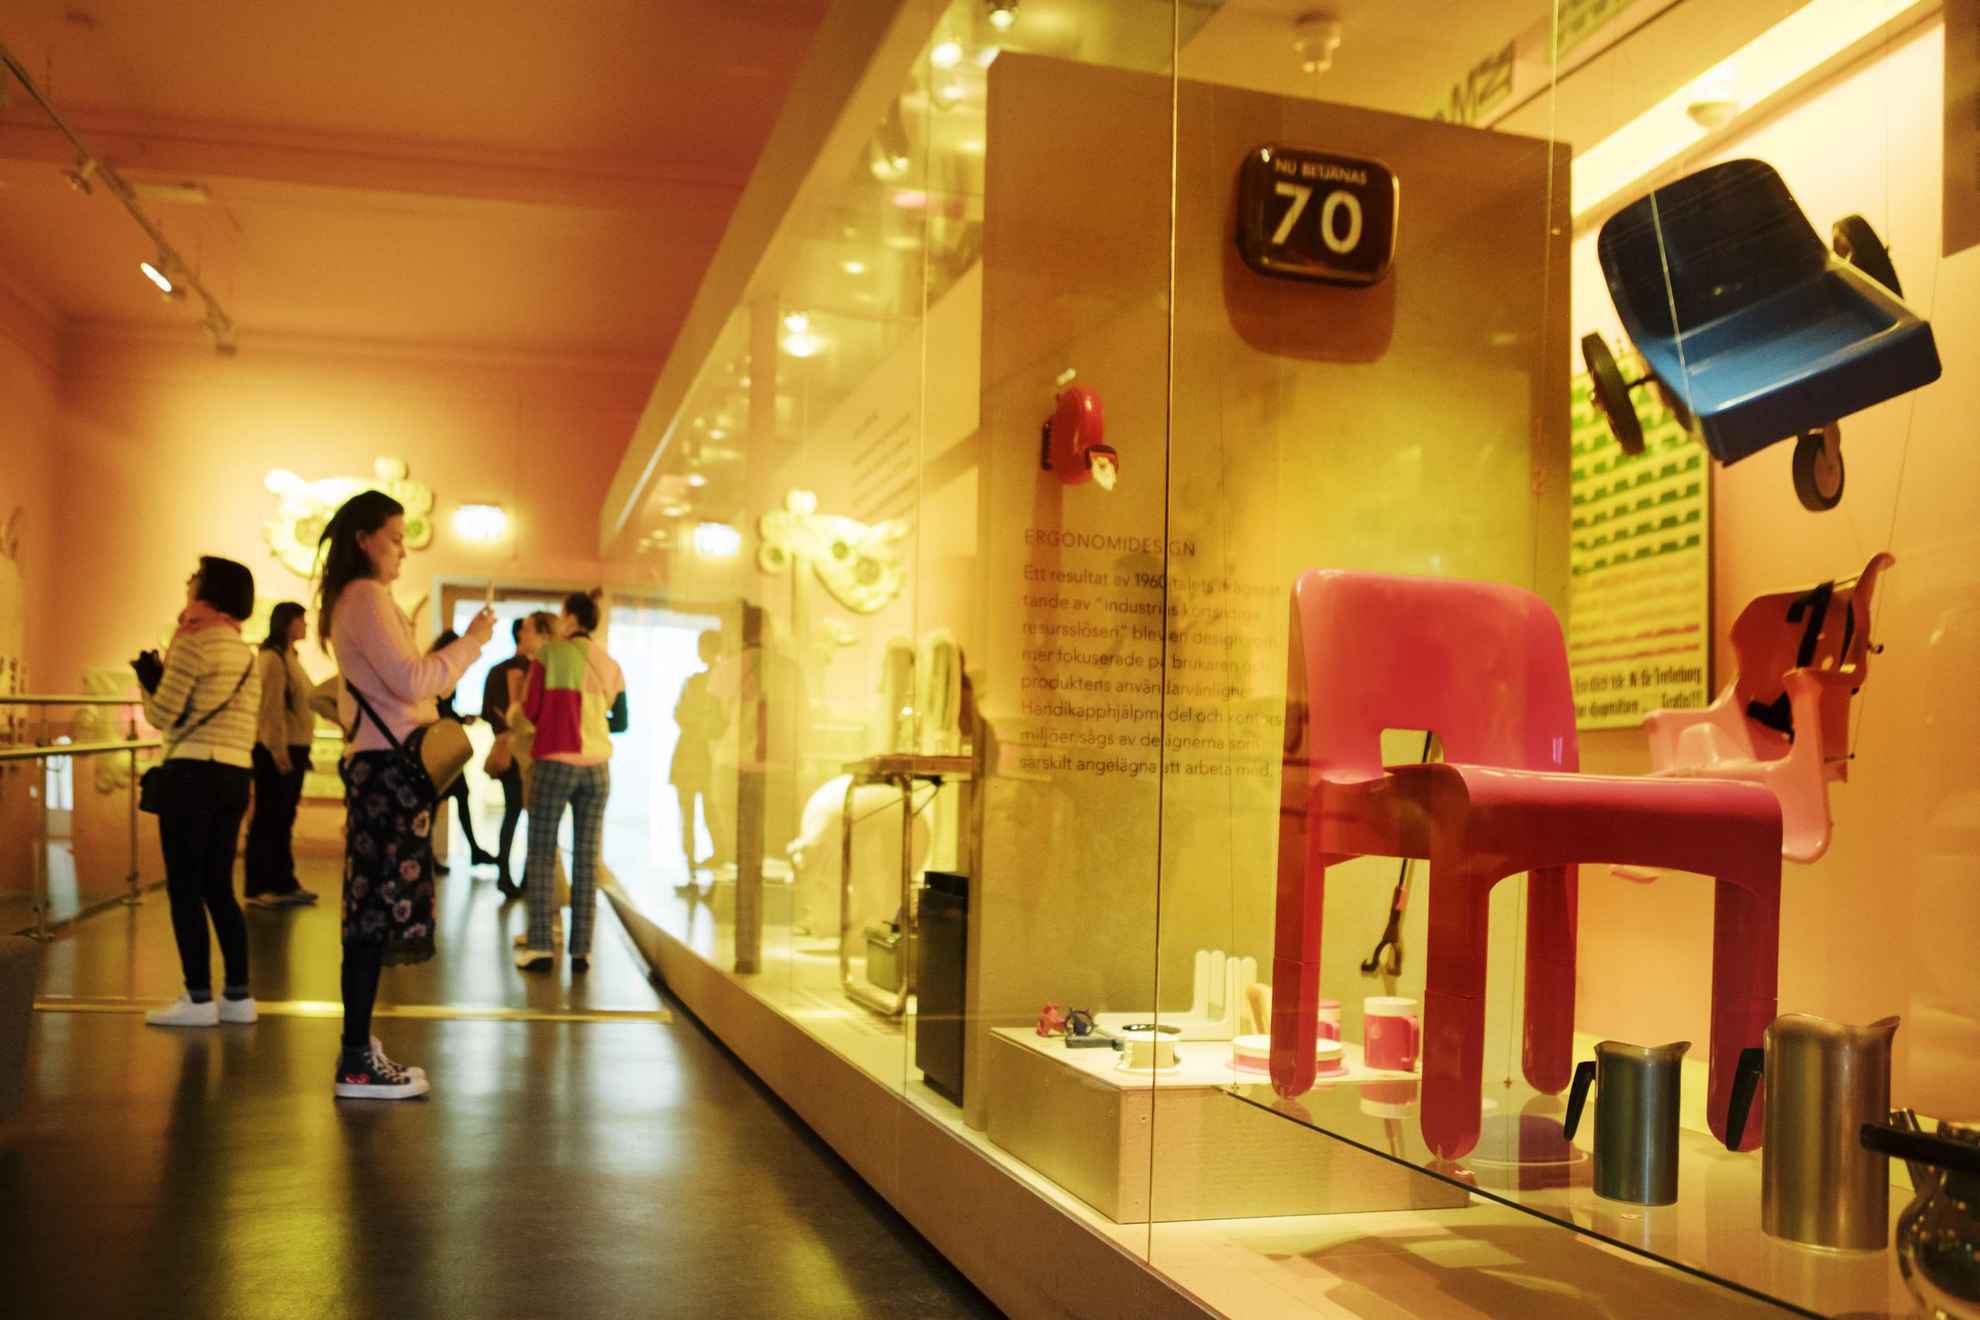 Besucher des Design und Handwerks Museums betrachten die Ausstellung mit Design Artikeln wie einen roten Stuhl.